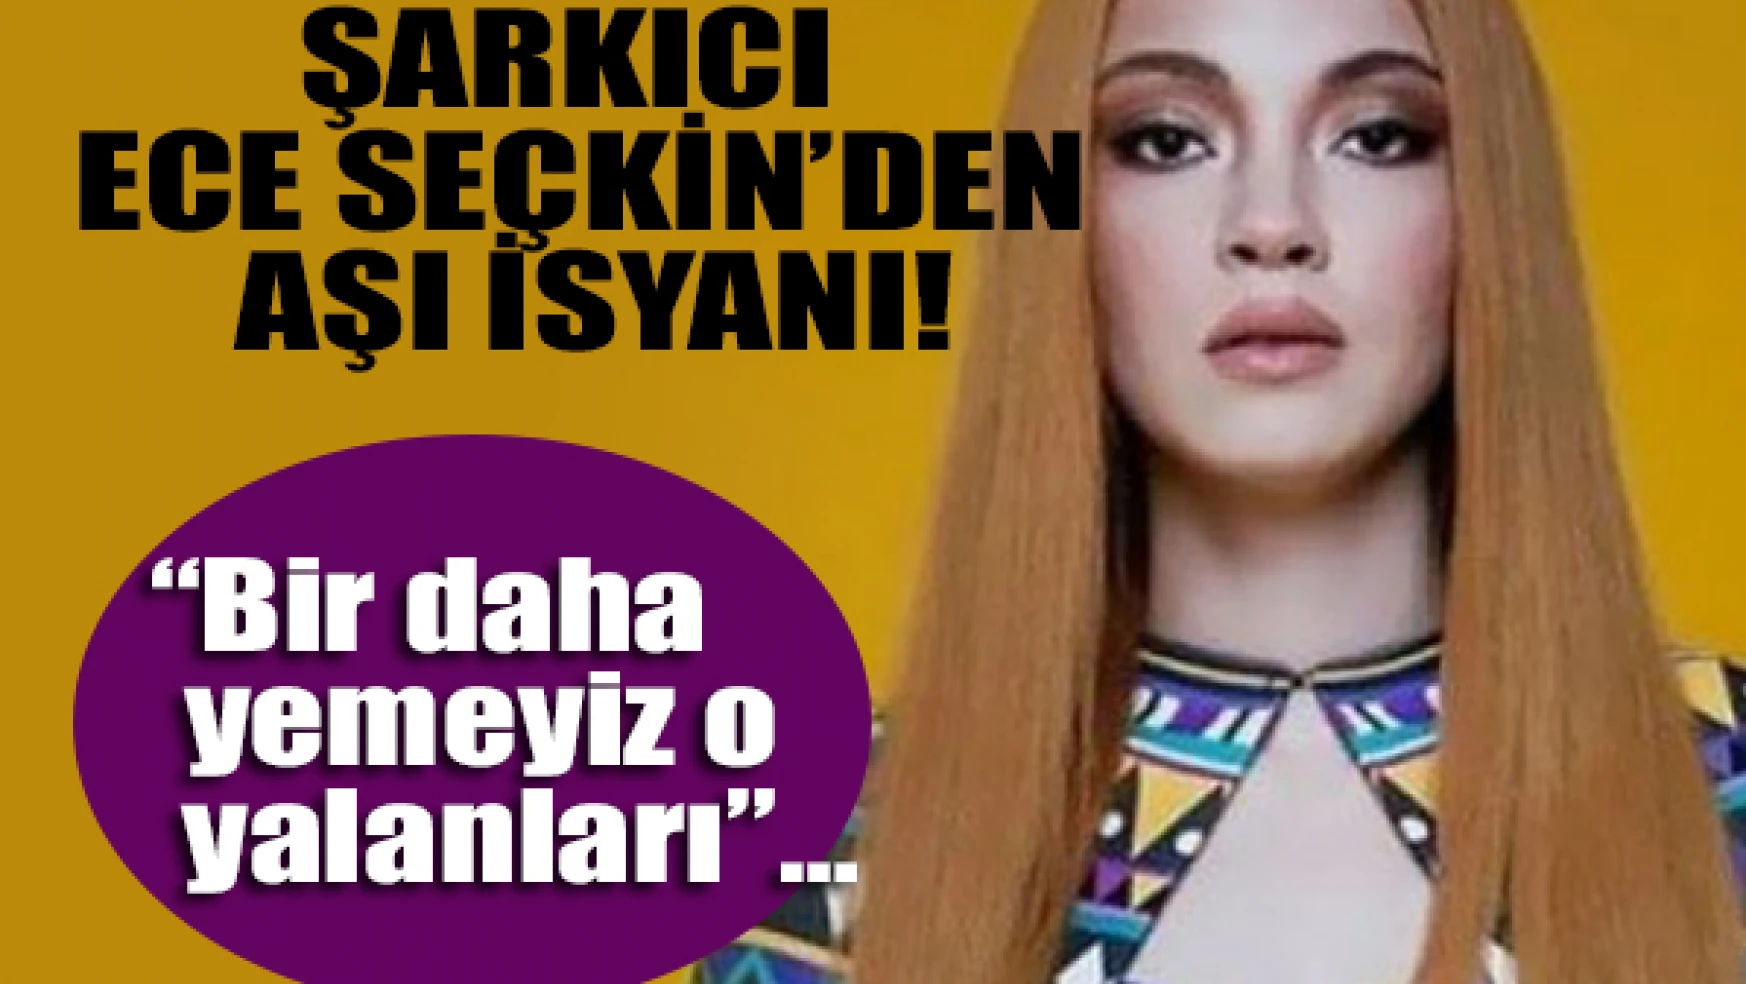 Şarkıcı Ece Seçkin'den aşı isyanı!